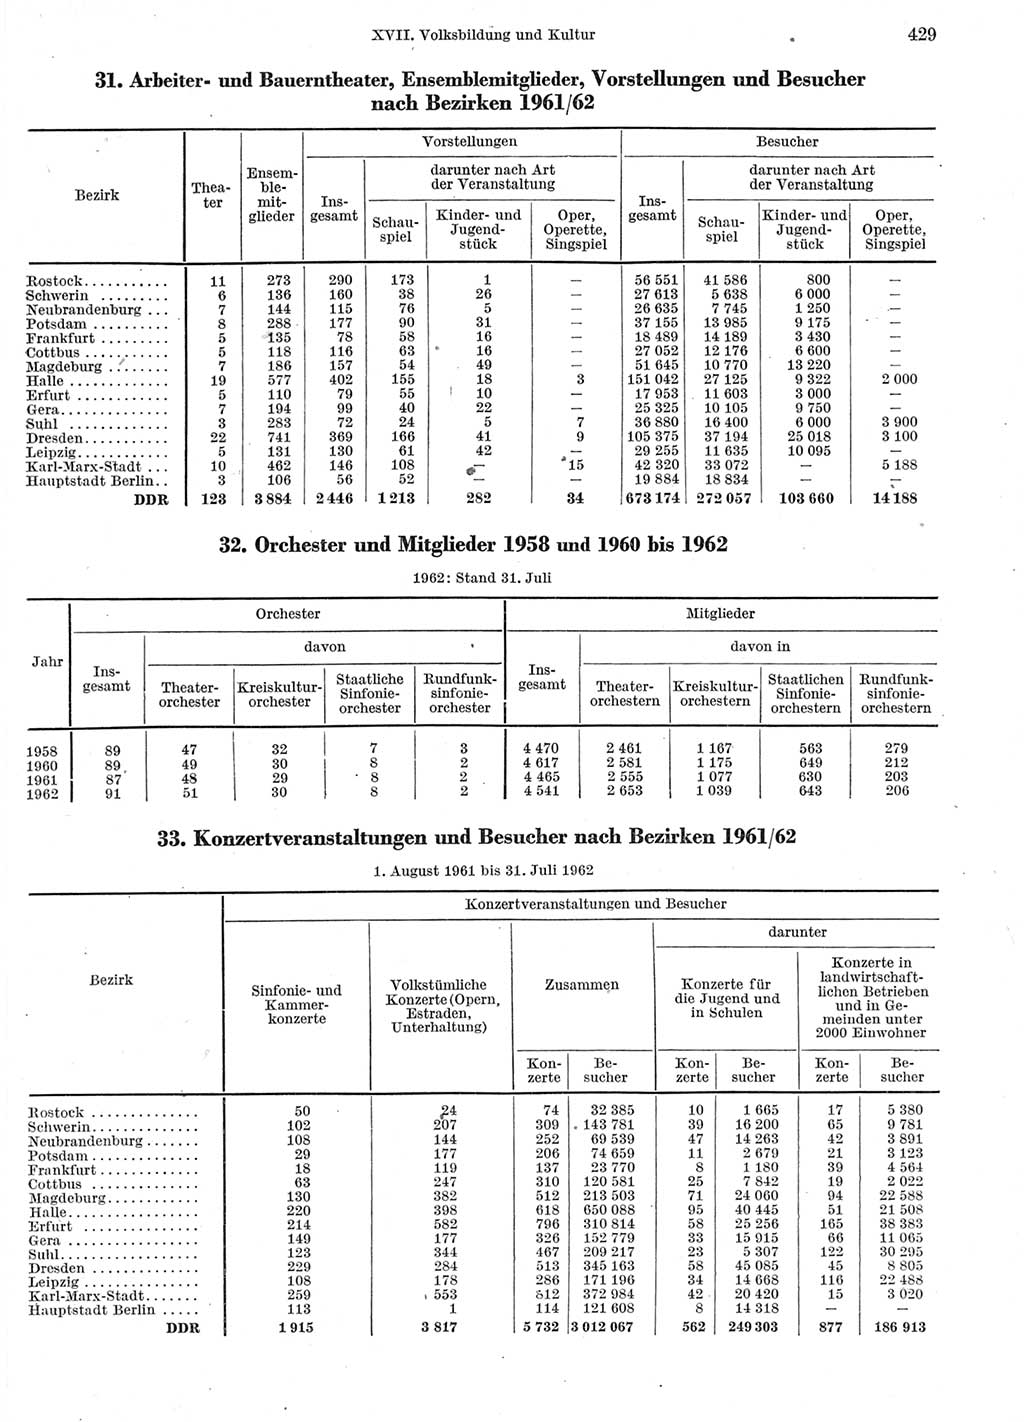 Statistisches Jahrbuch der Deutschen Demokratischen Republik (DDR) 1963, Seite 429 (Stat. Jb. DDR 1963, S. 429)